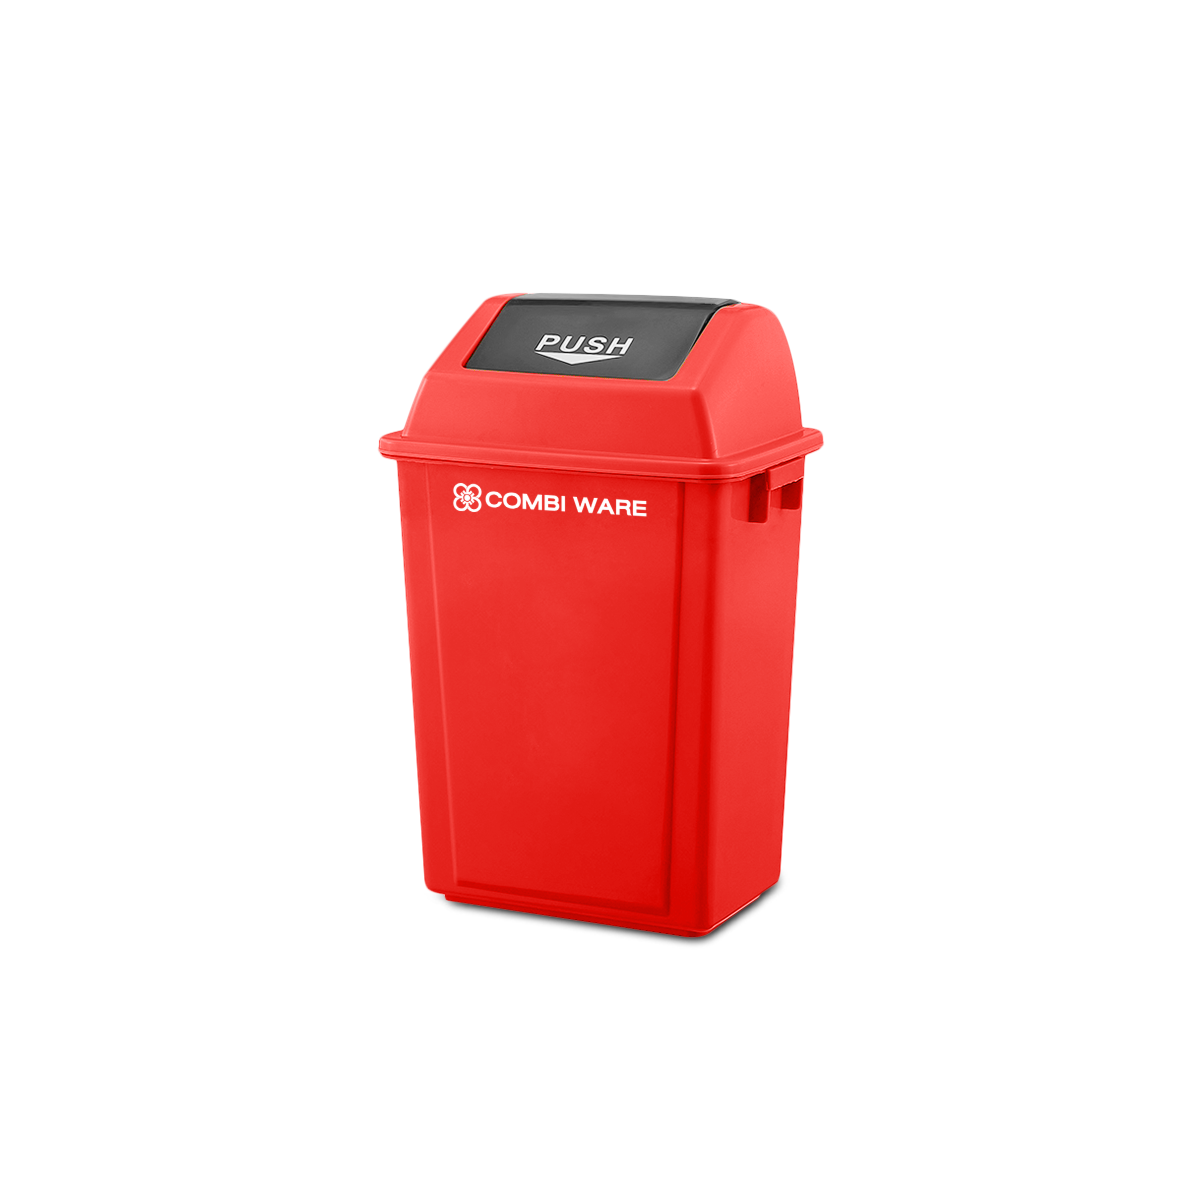 ถังขยะพลาสติก ขนาด 30 ลิตร แบบฝาผลัก สีแดง